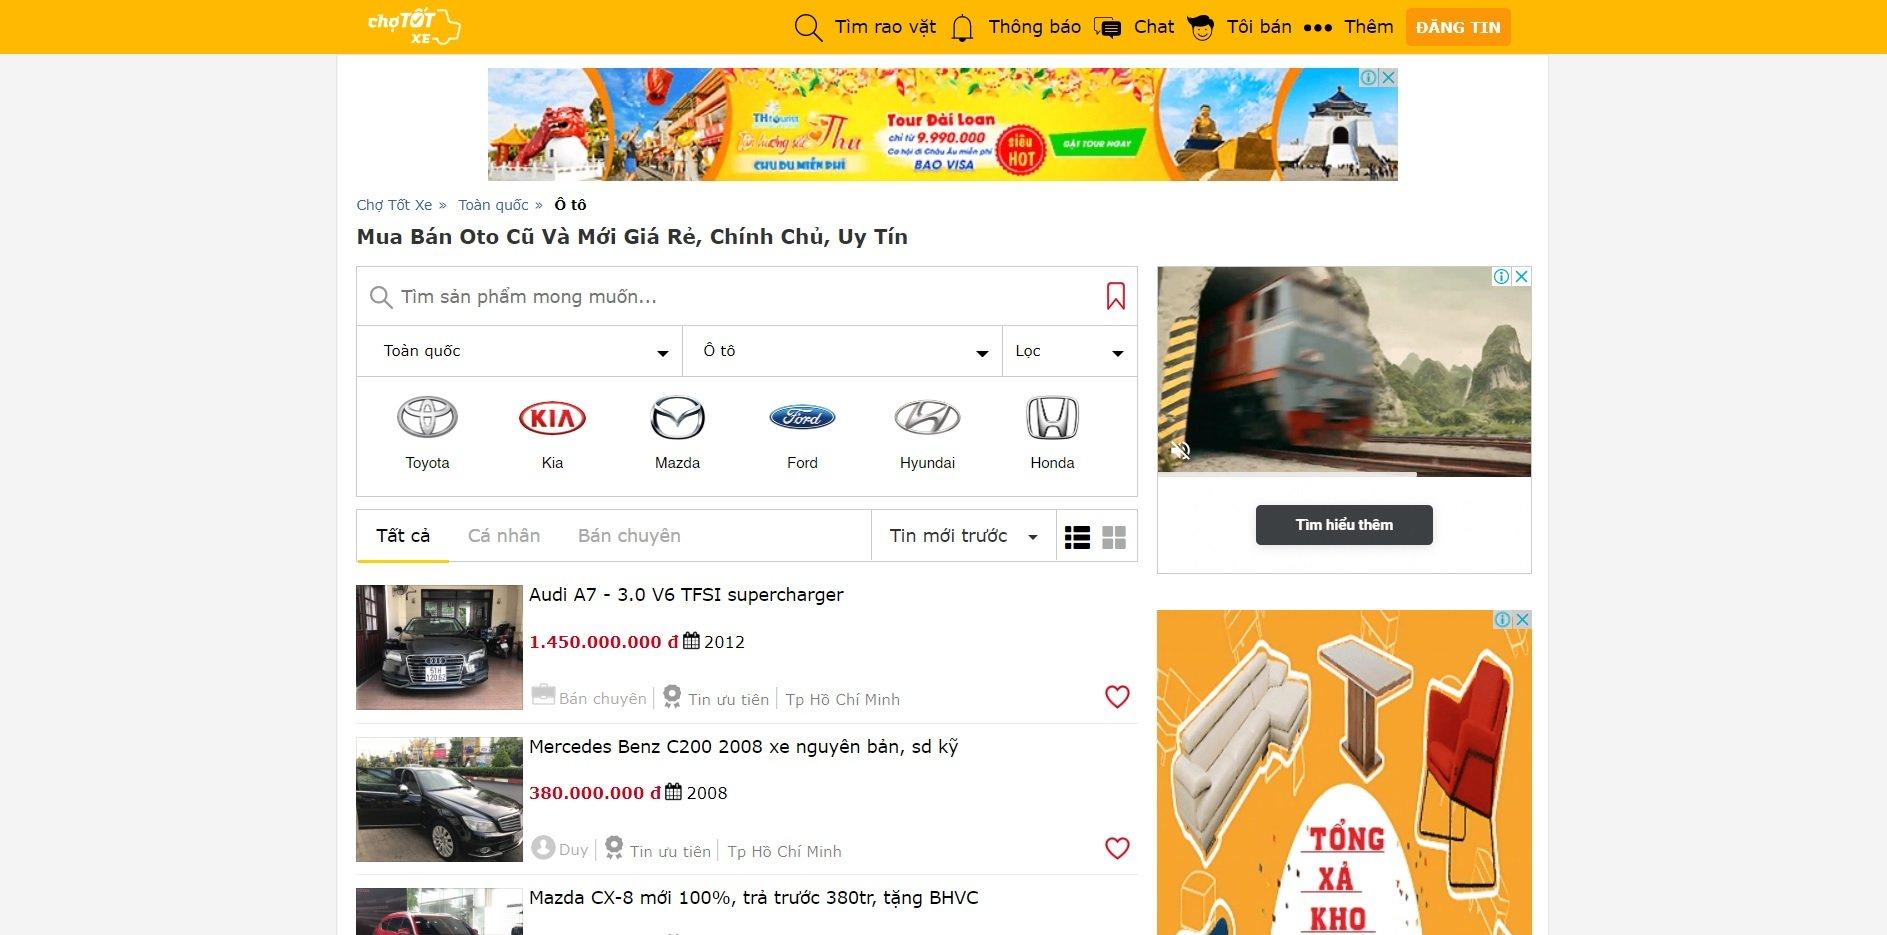 Trang web mua bán xe ô tô cũ Chợ tốt có độ uy tín cao. Ảnh: internet